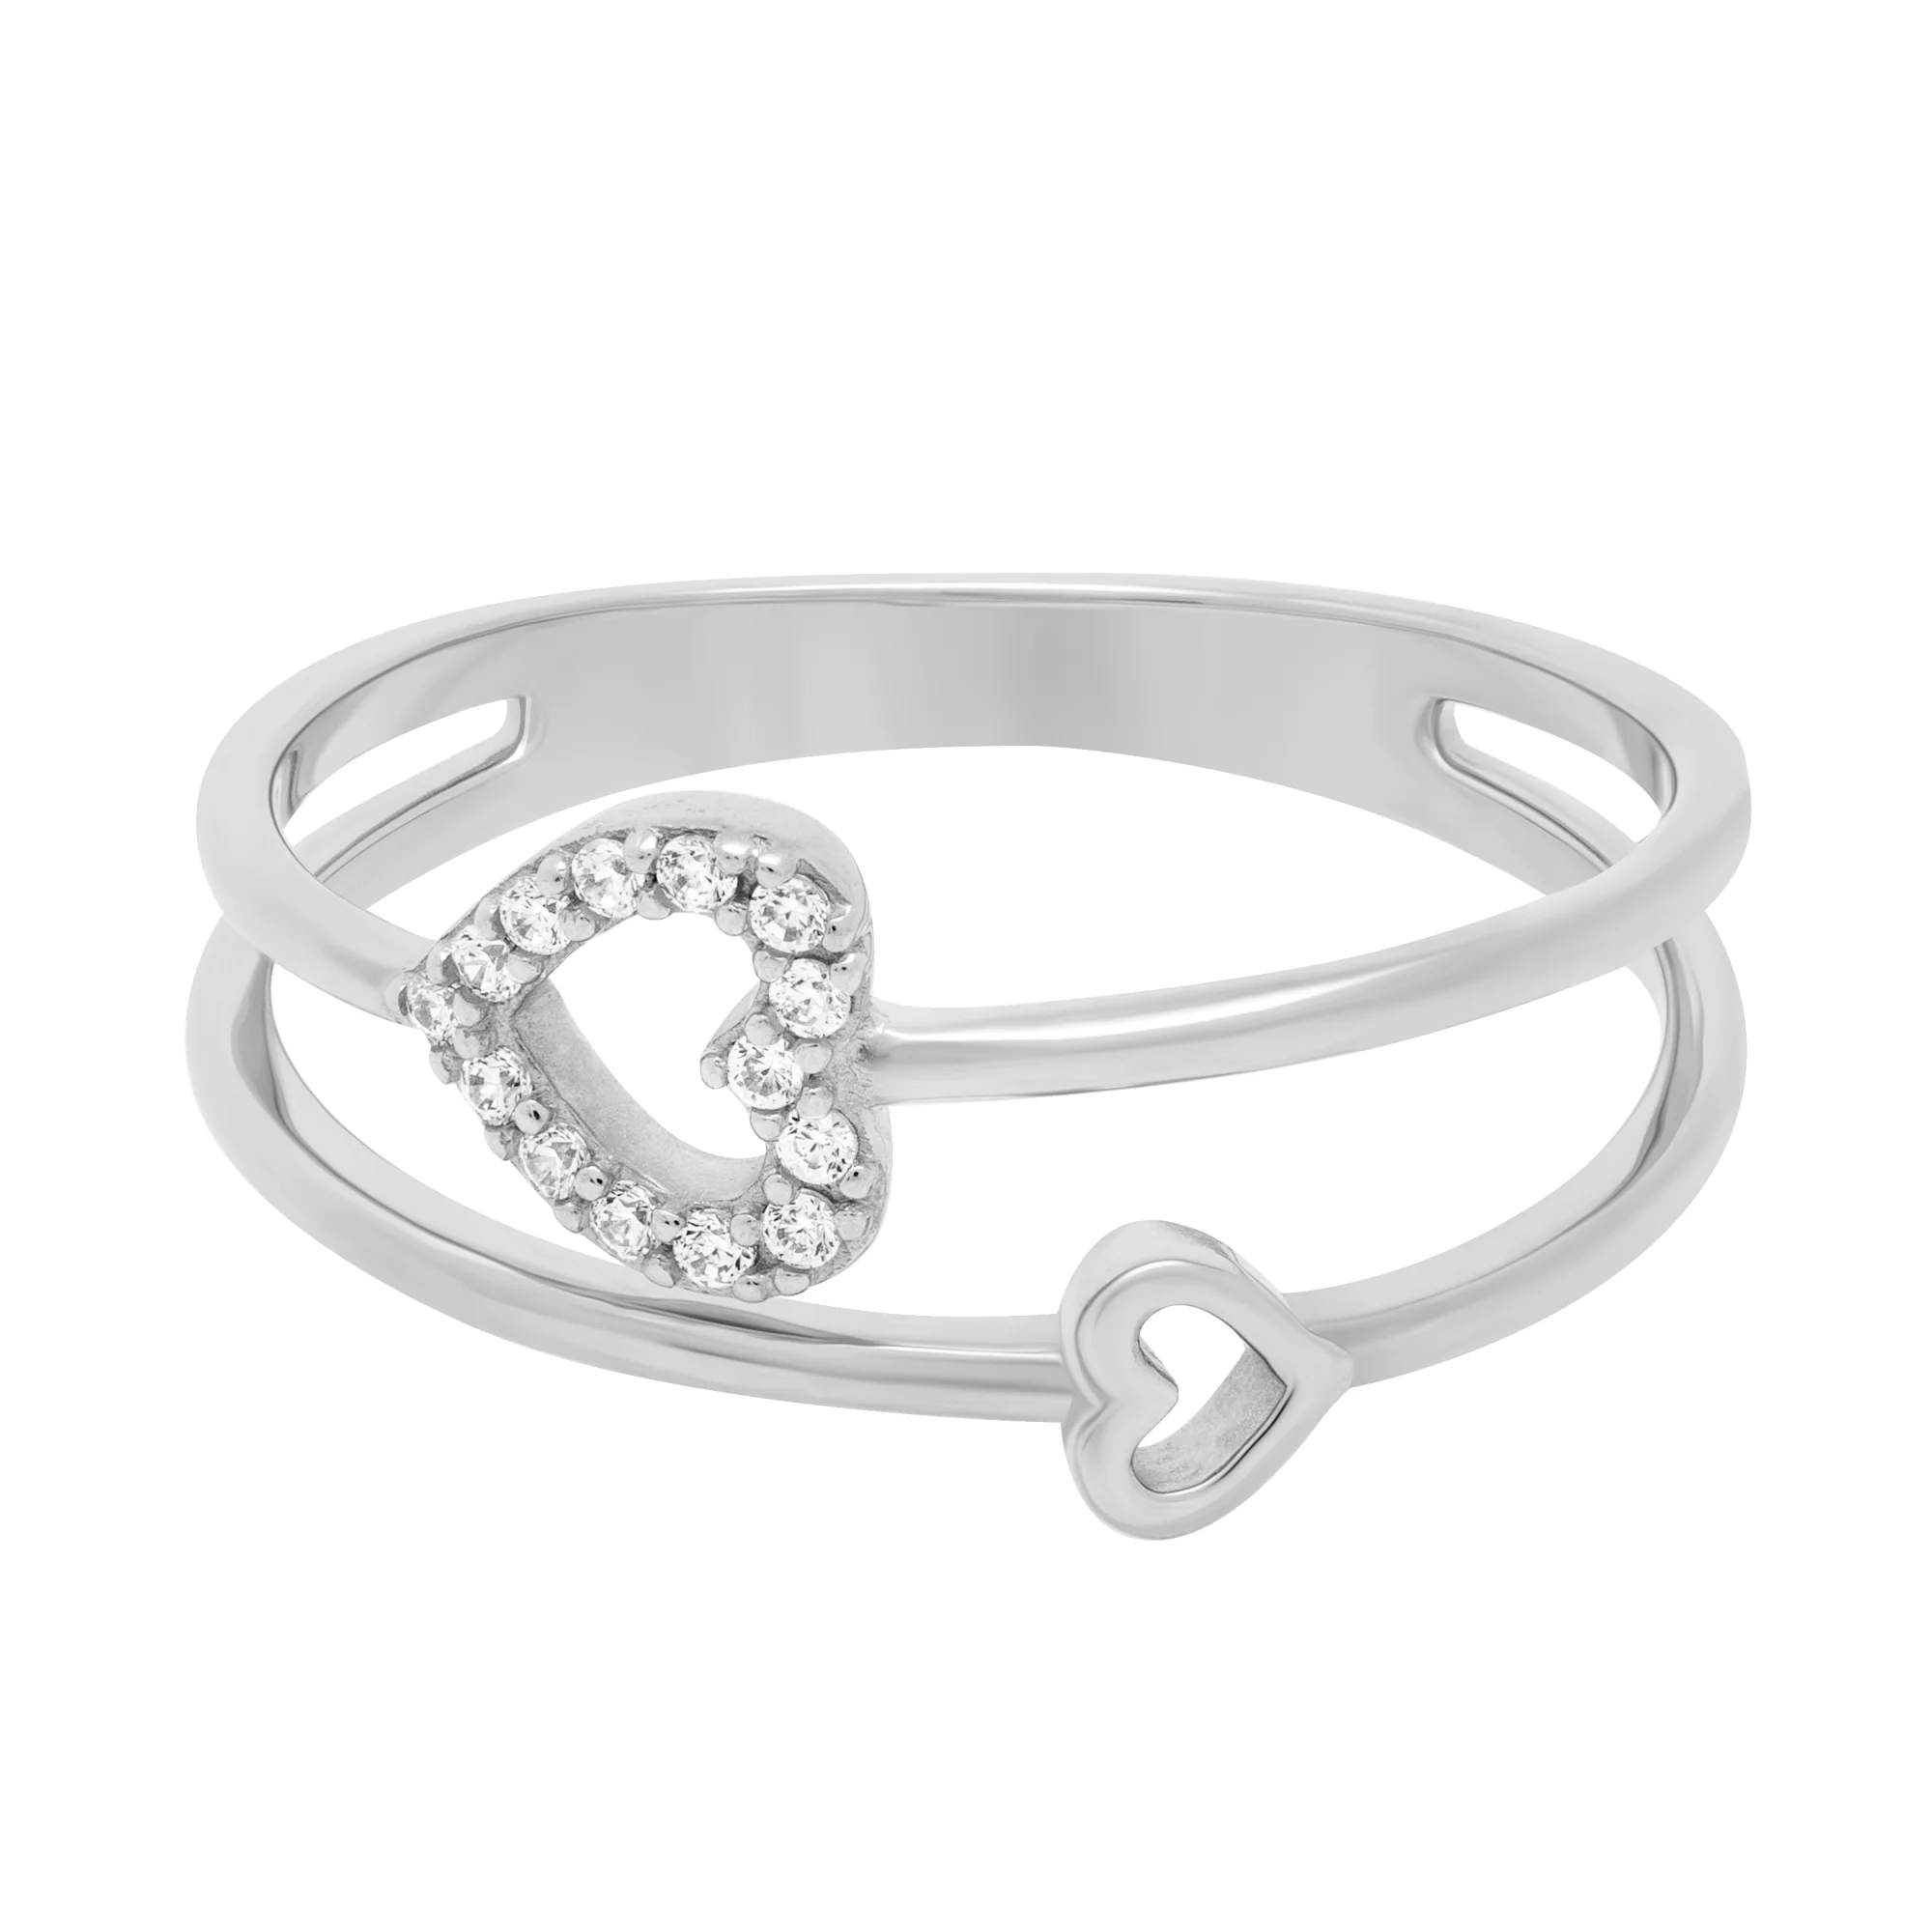 Двойное золотое кольцо с сердечками и фианитами - 1706749 – изображение 2